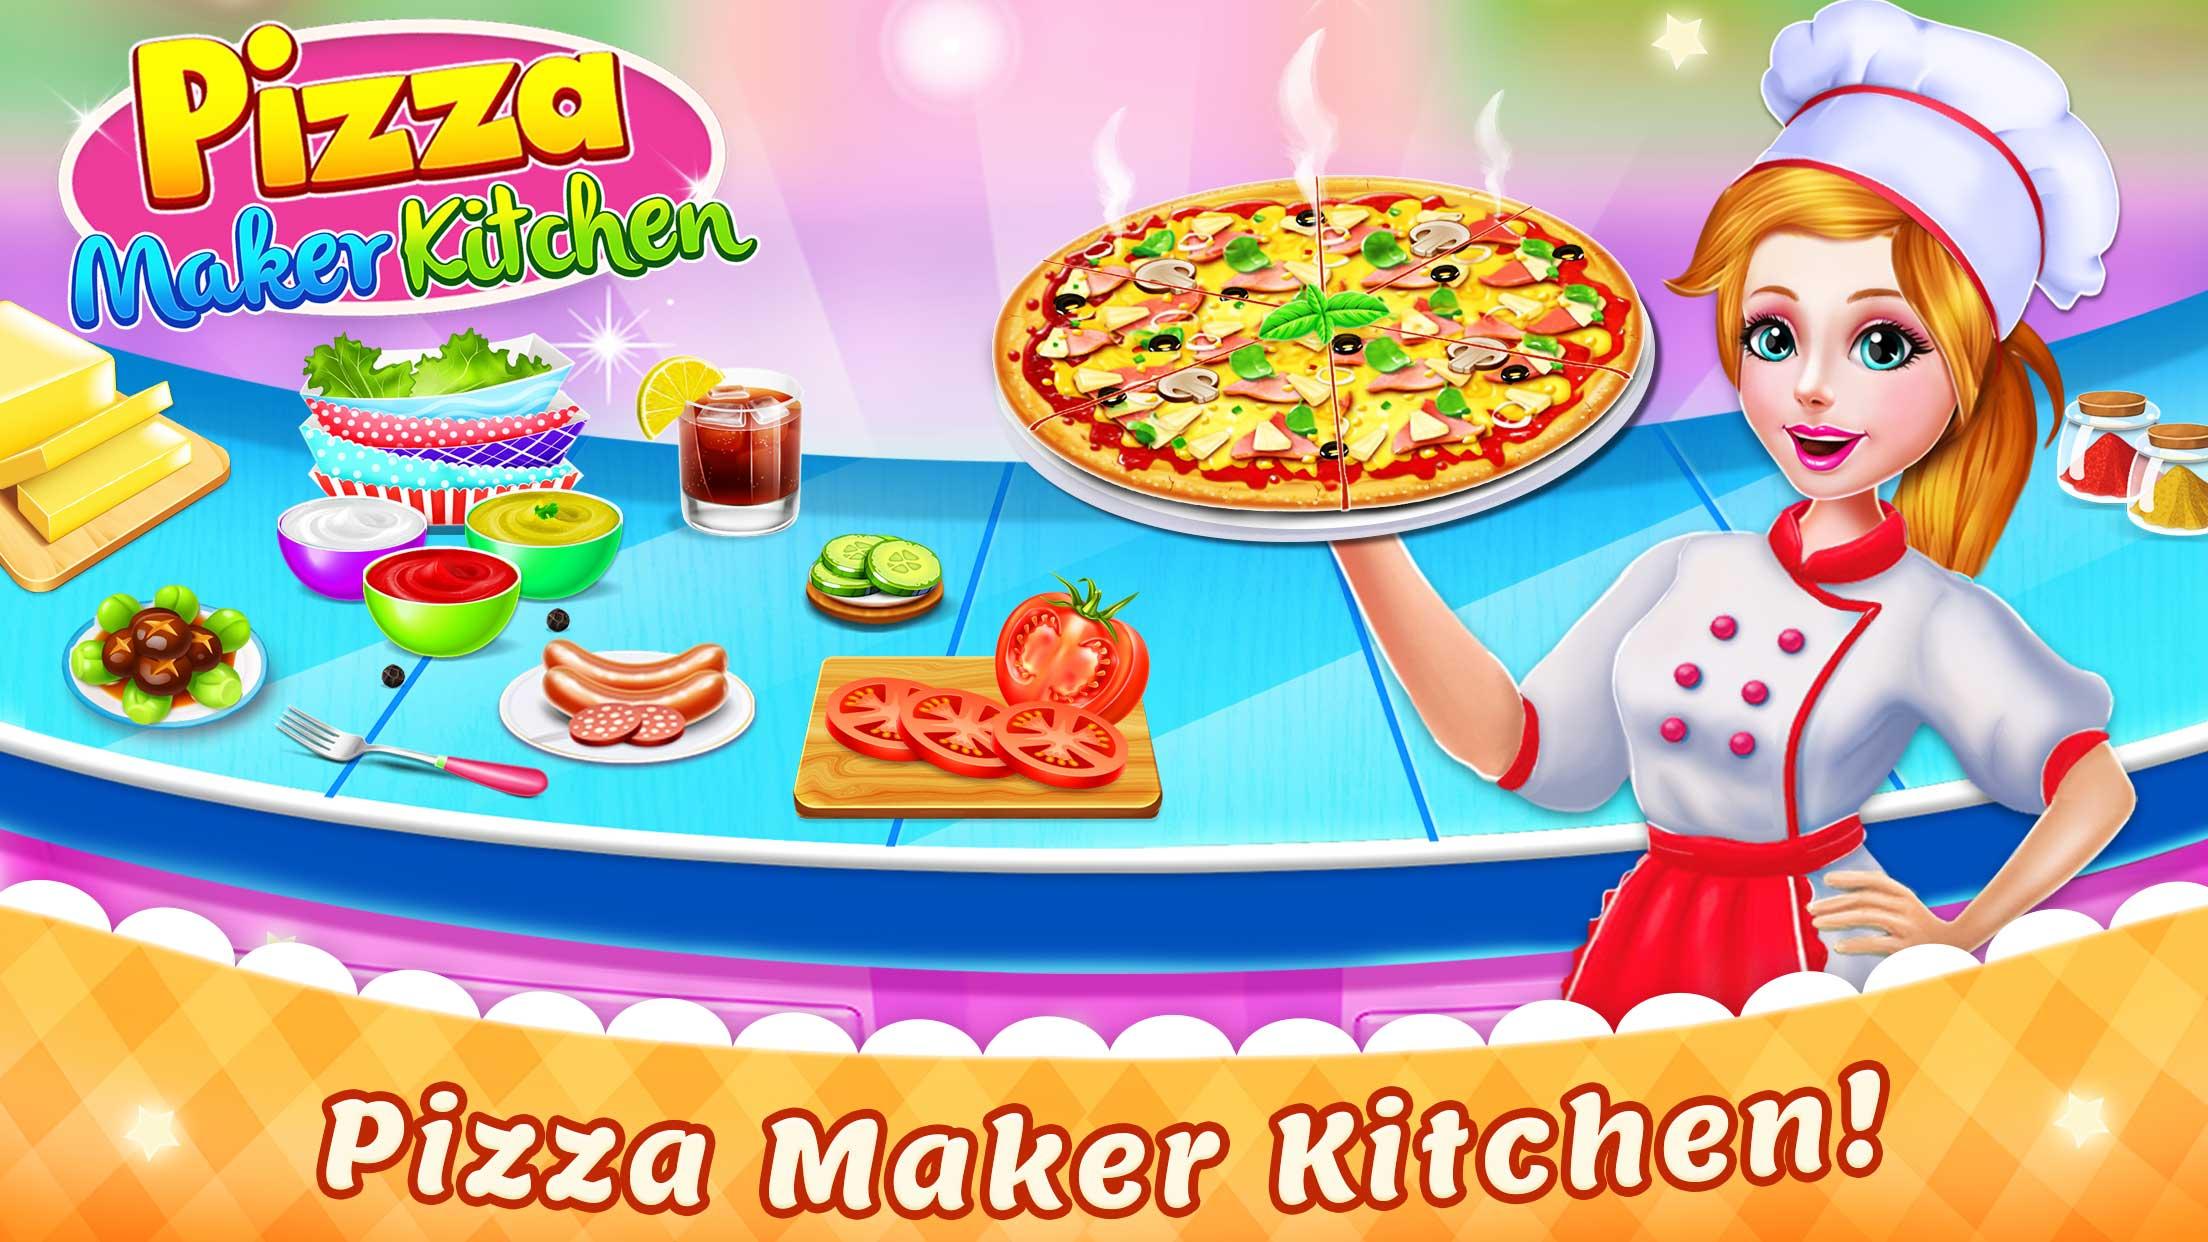 играть онлайн бесплатно готовить пиццу играть онлайн бесплатно фото 62